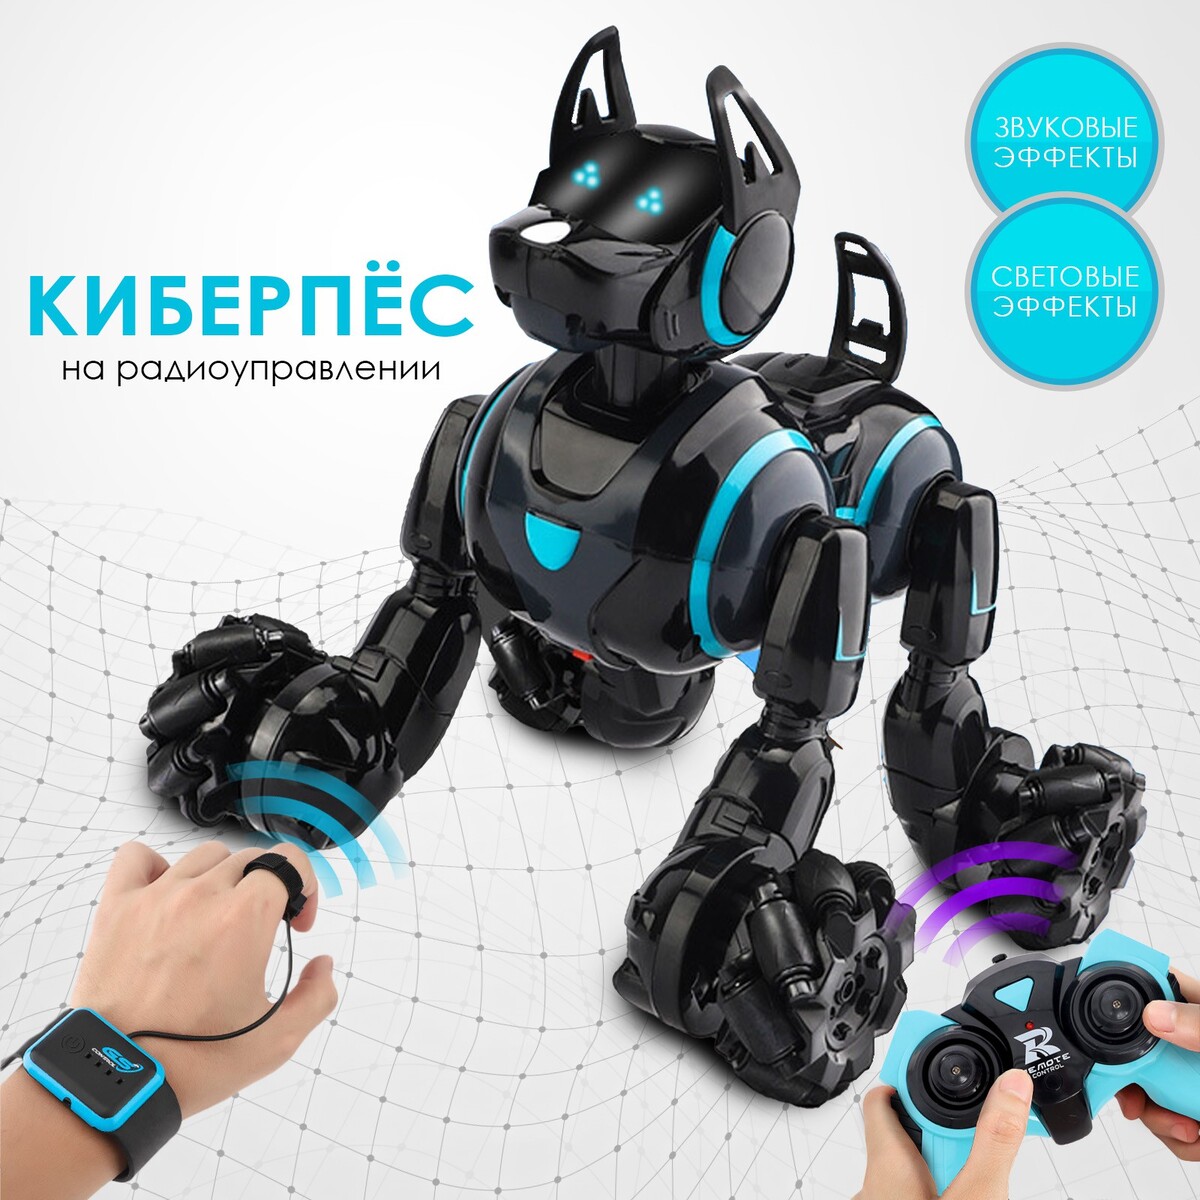 Робот собака stunt, на пульте управления, интерактивный: звук, свет, на аккумуляторе, черный интерактивный робот собака petoi bittle stem kit